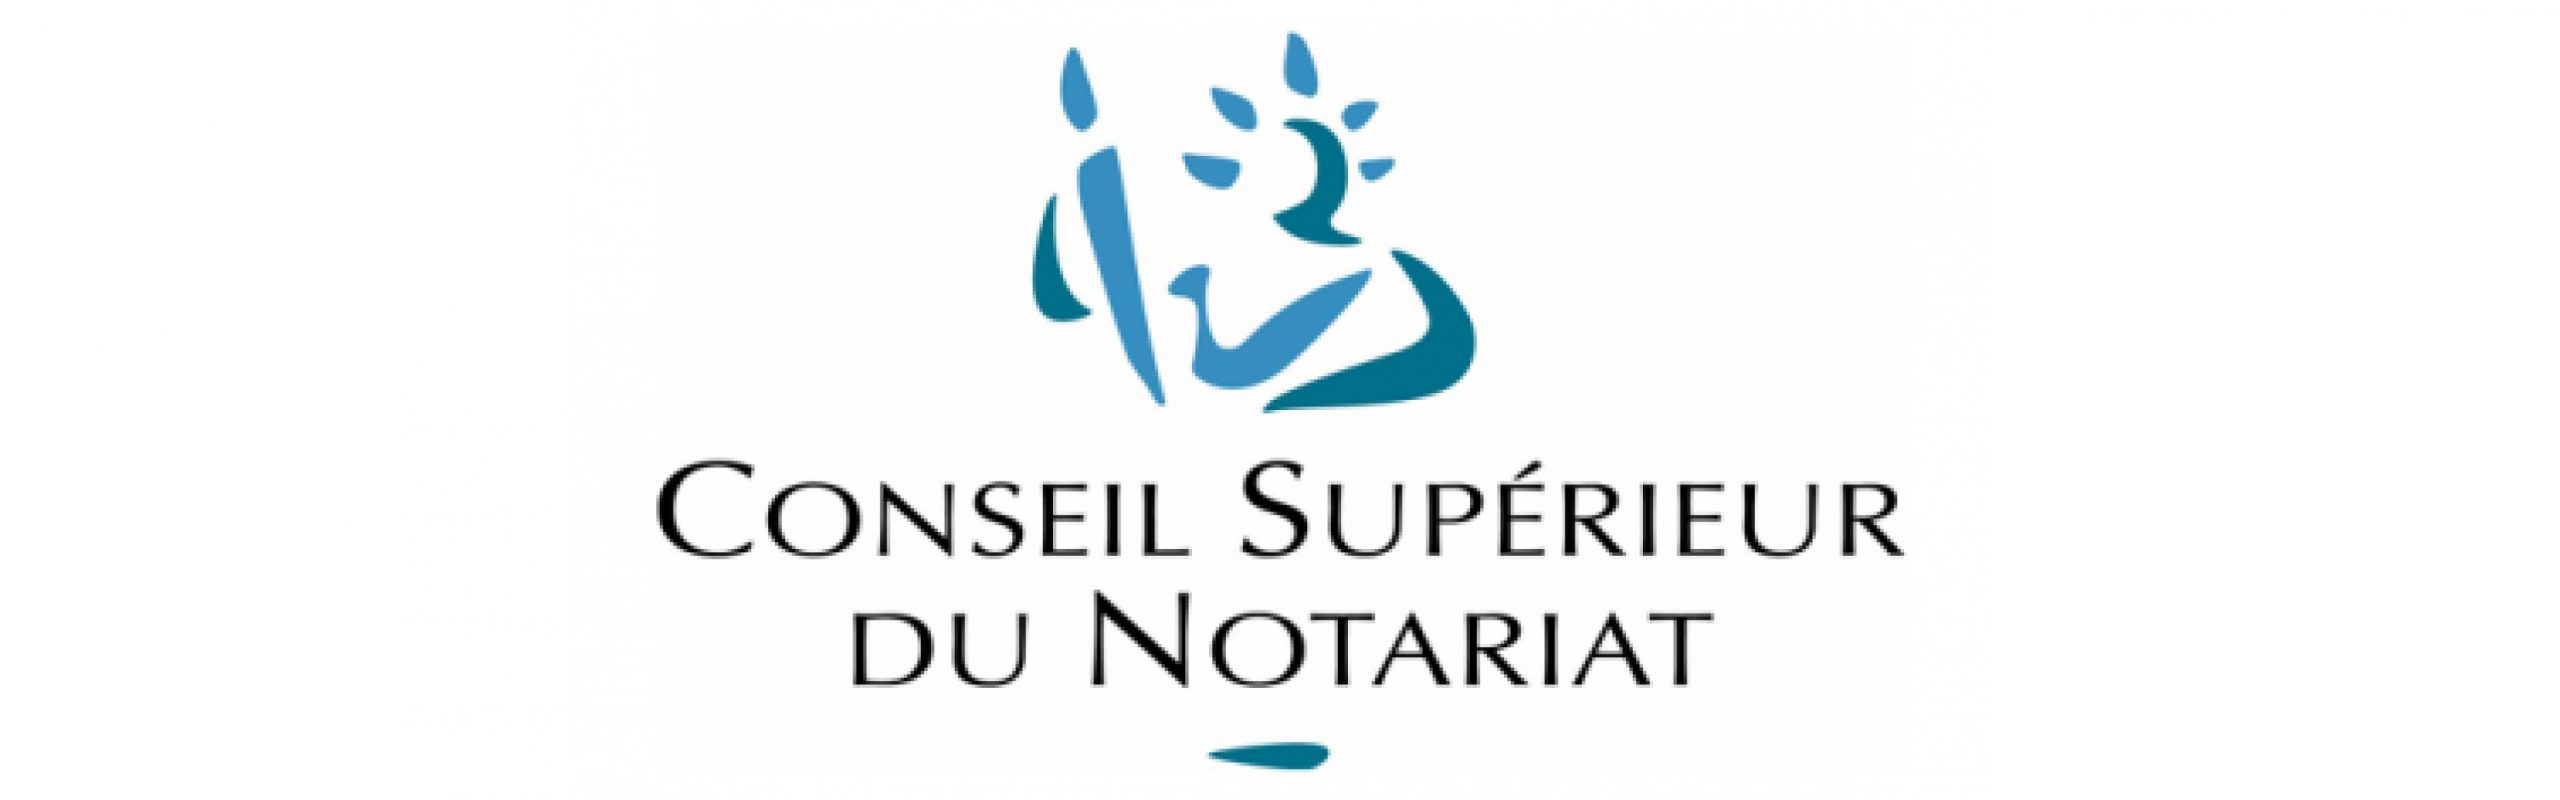 Conseil supérieur du notariat (CSN)